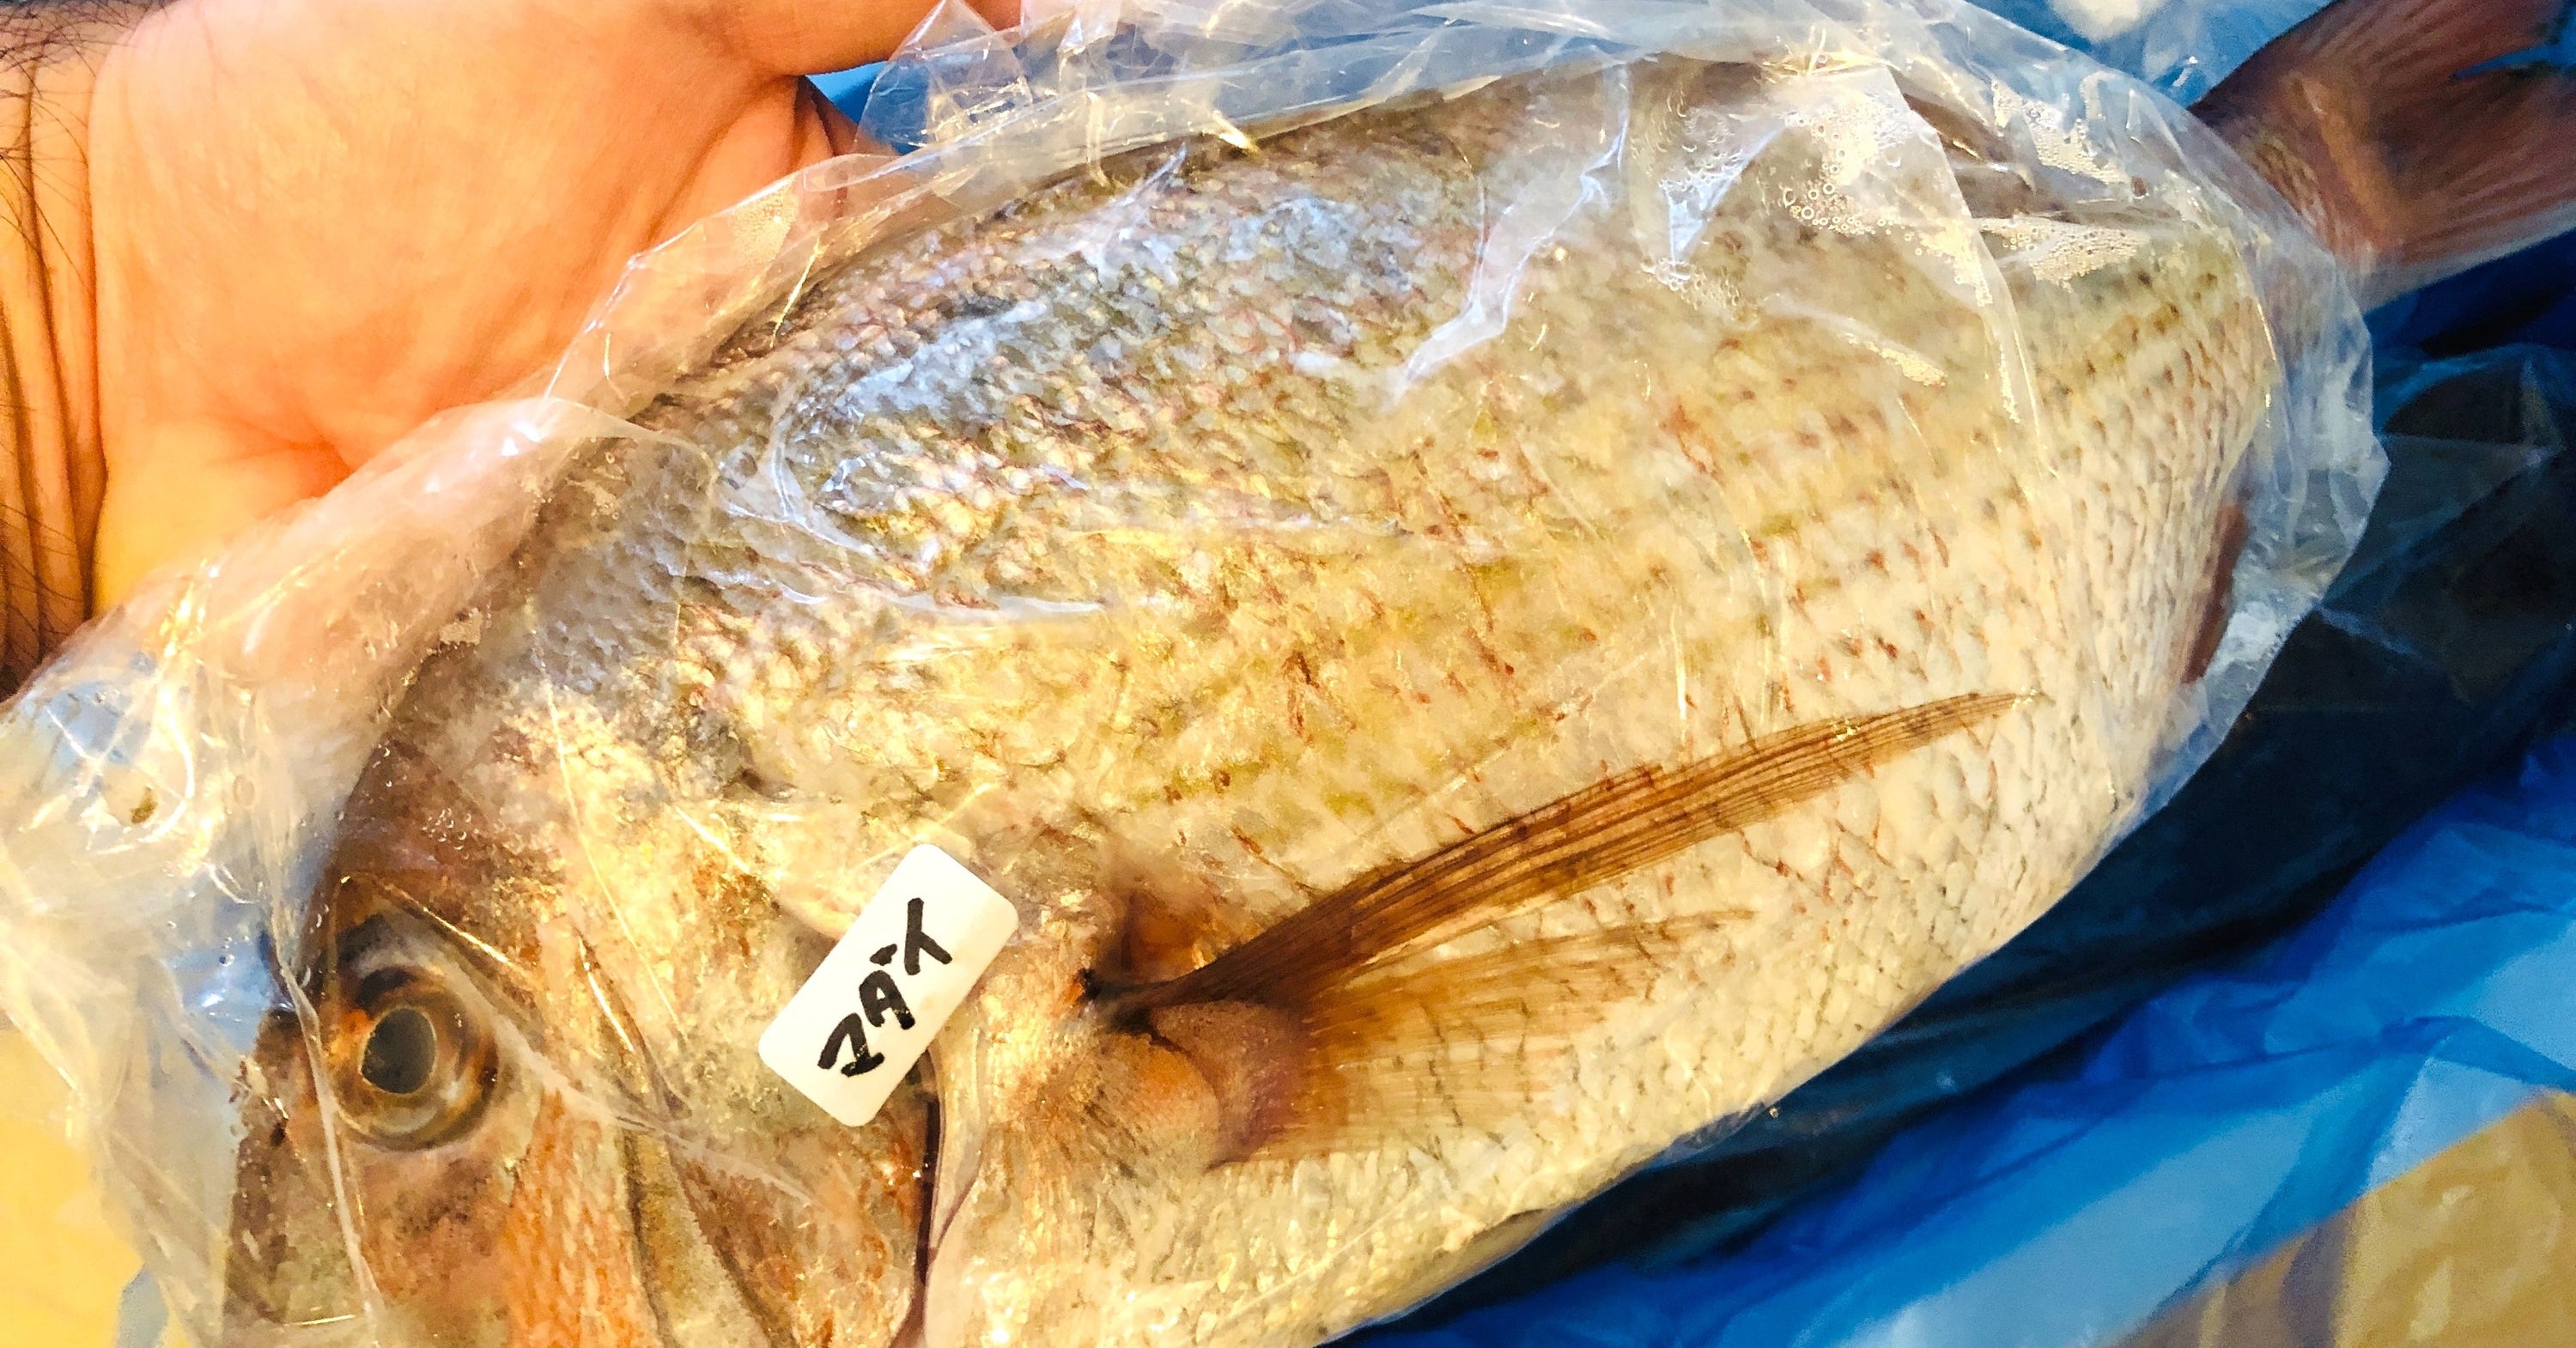 東北から新鮮な魚がどっさり届く「鮮魚BOX」がやばい。 - BuzzFeed Japan